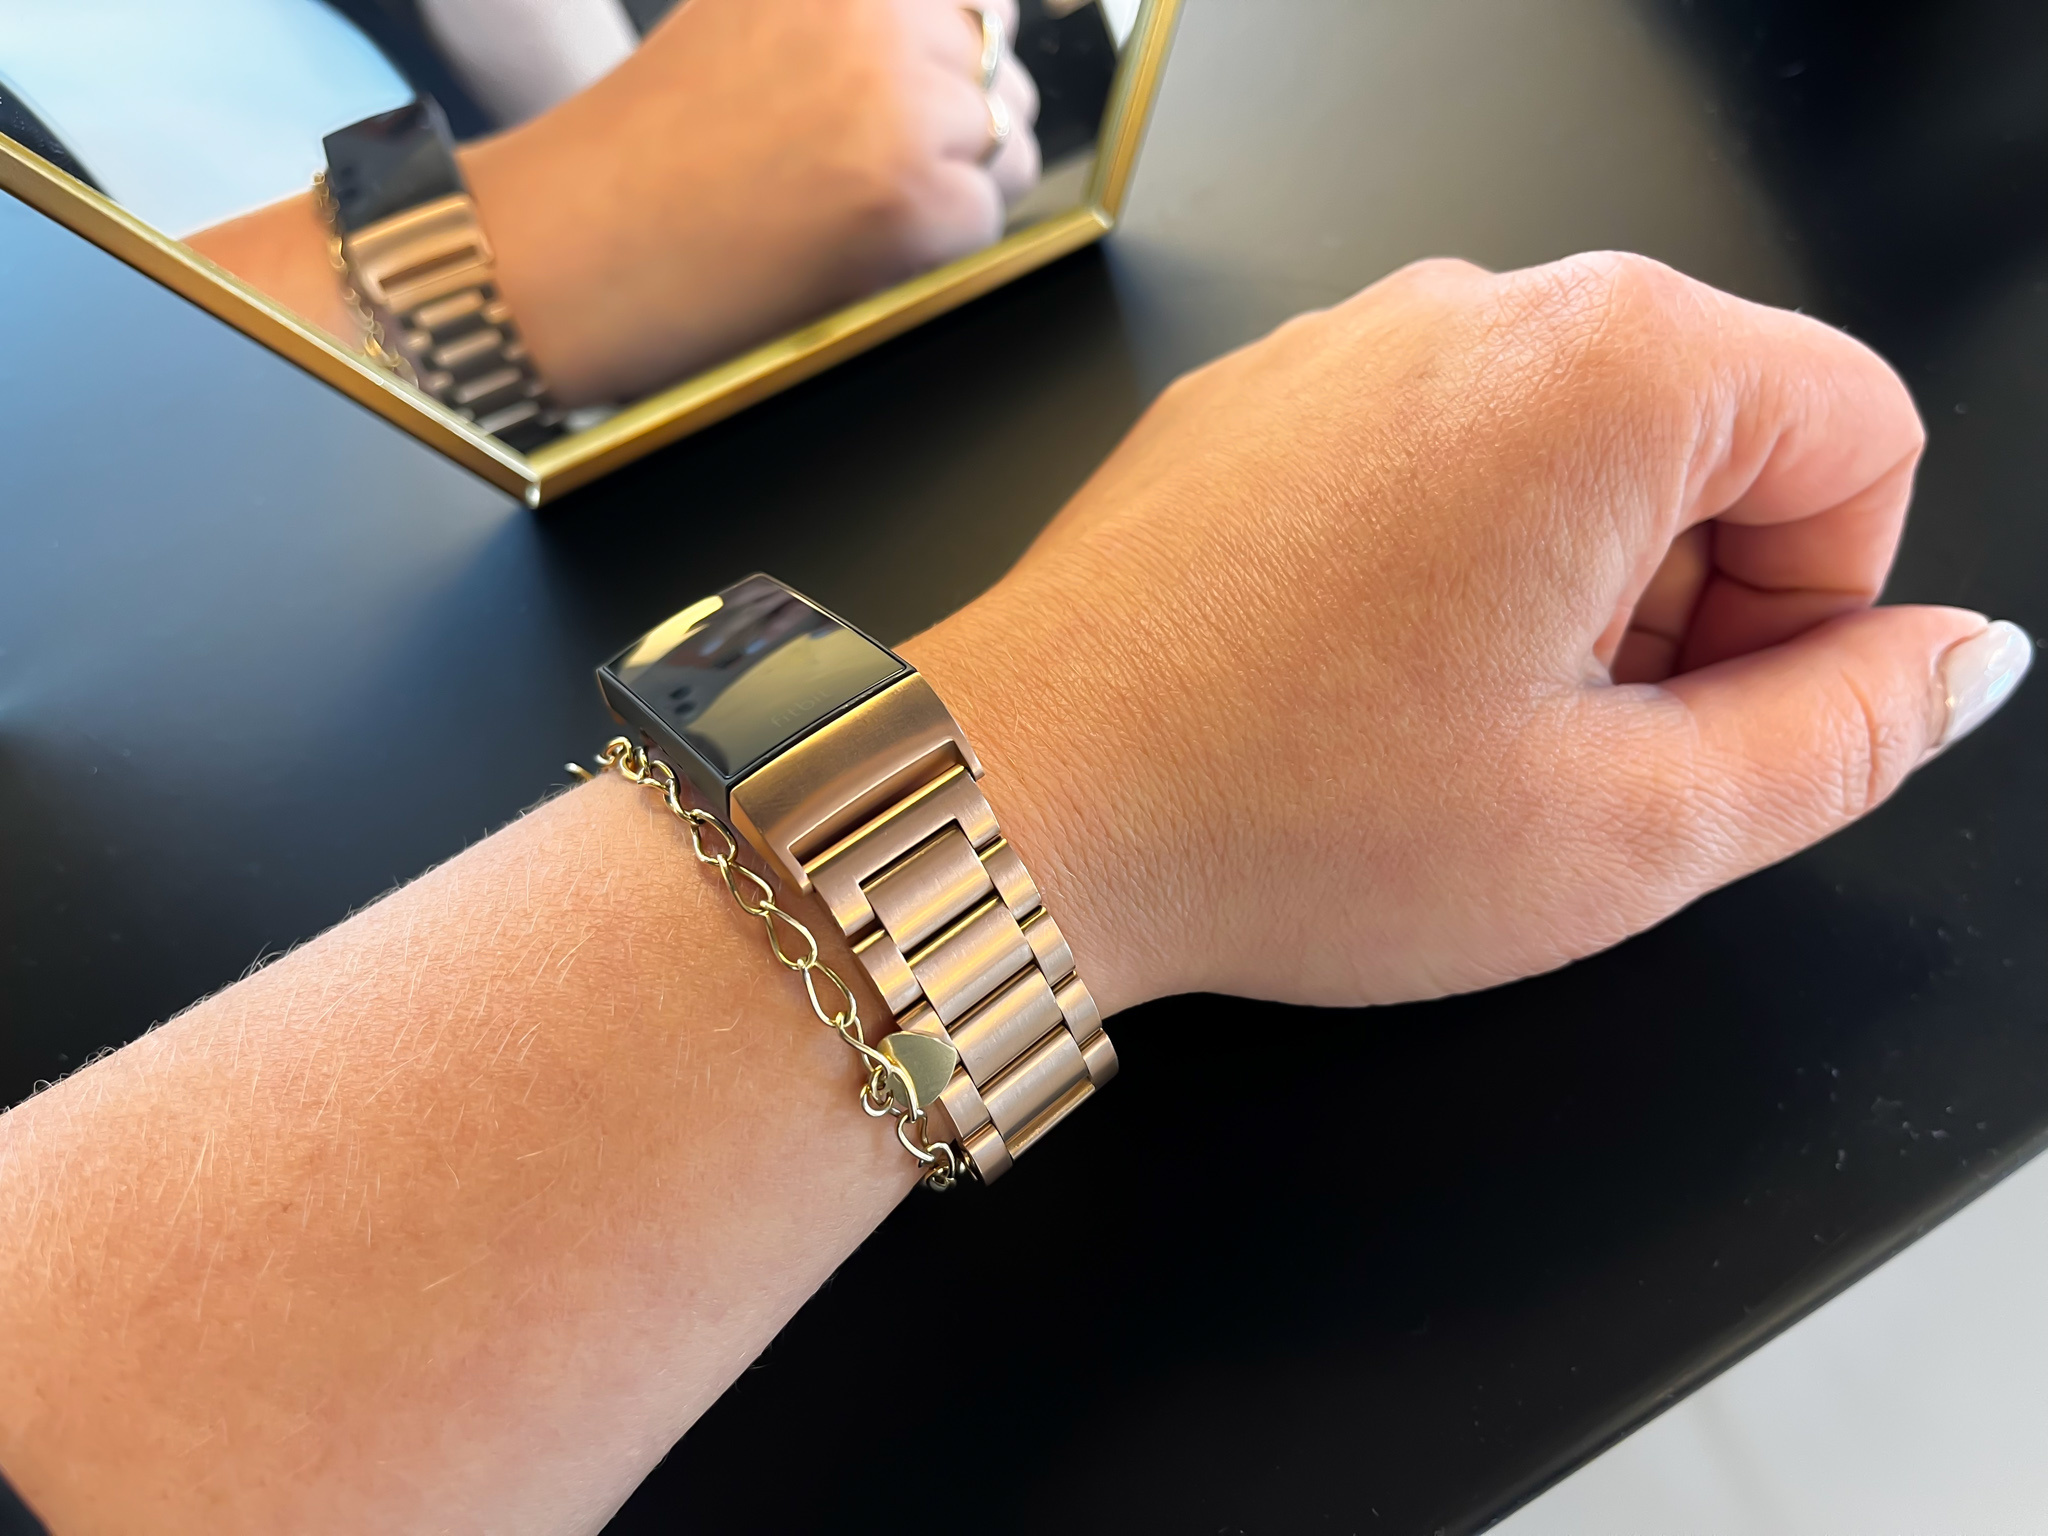 Fitbit Charge 3 & 4 kralen stalen schakel band - rose goud